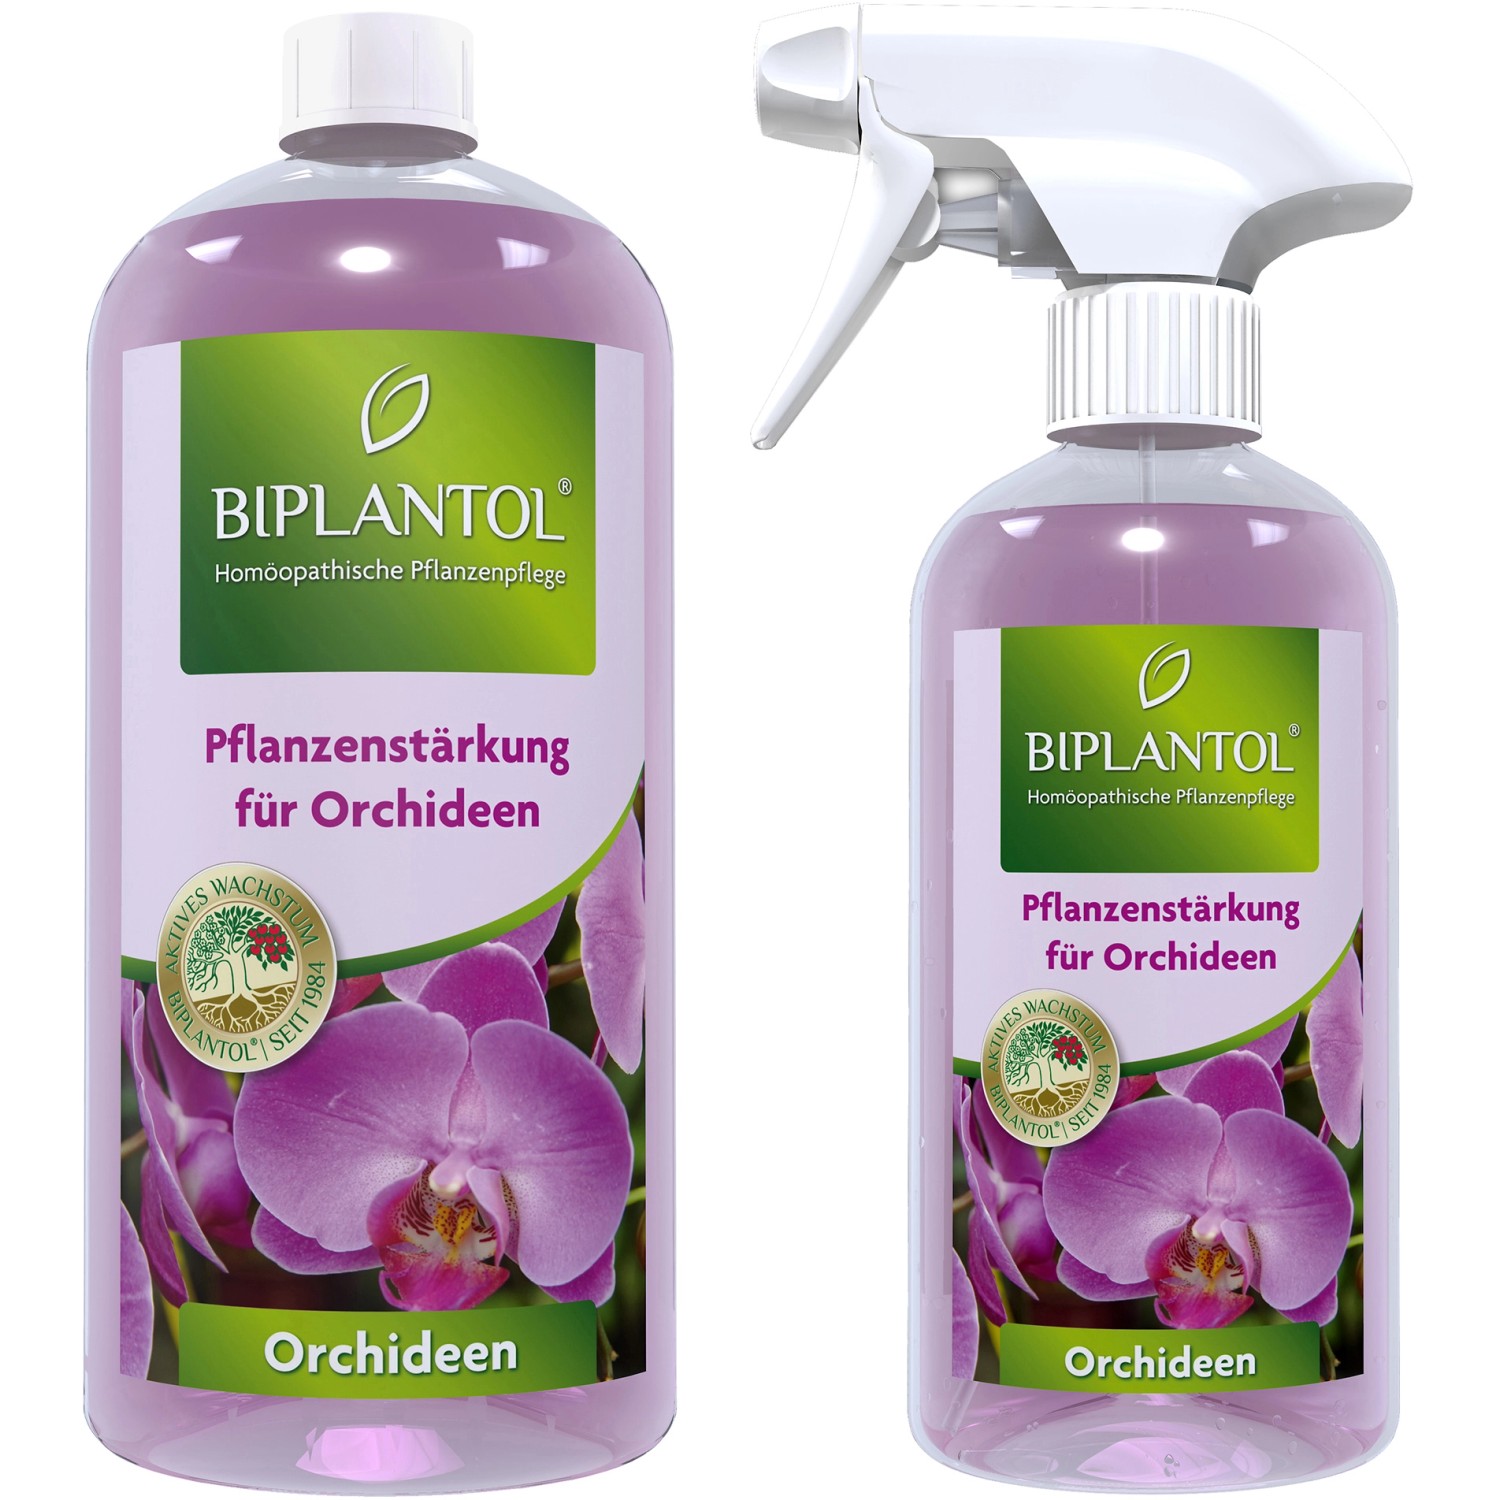 Biplantol Orchideen Spray Set von Biplantol